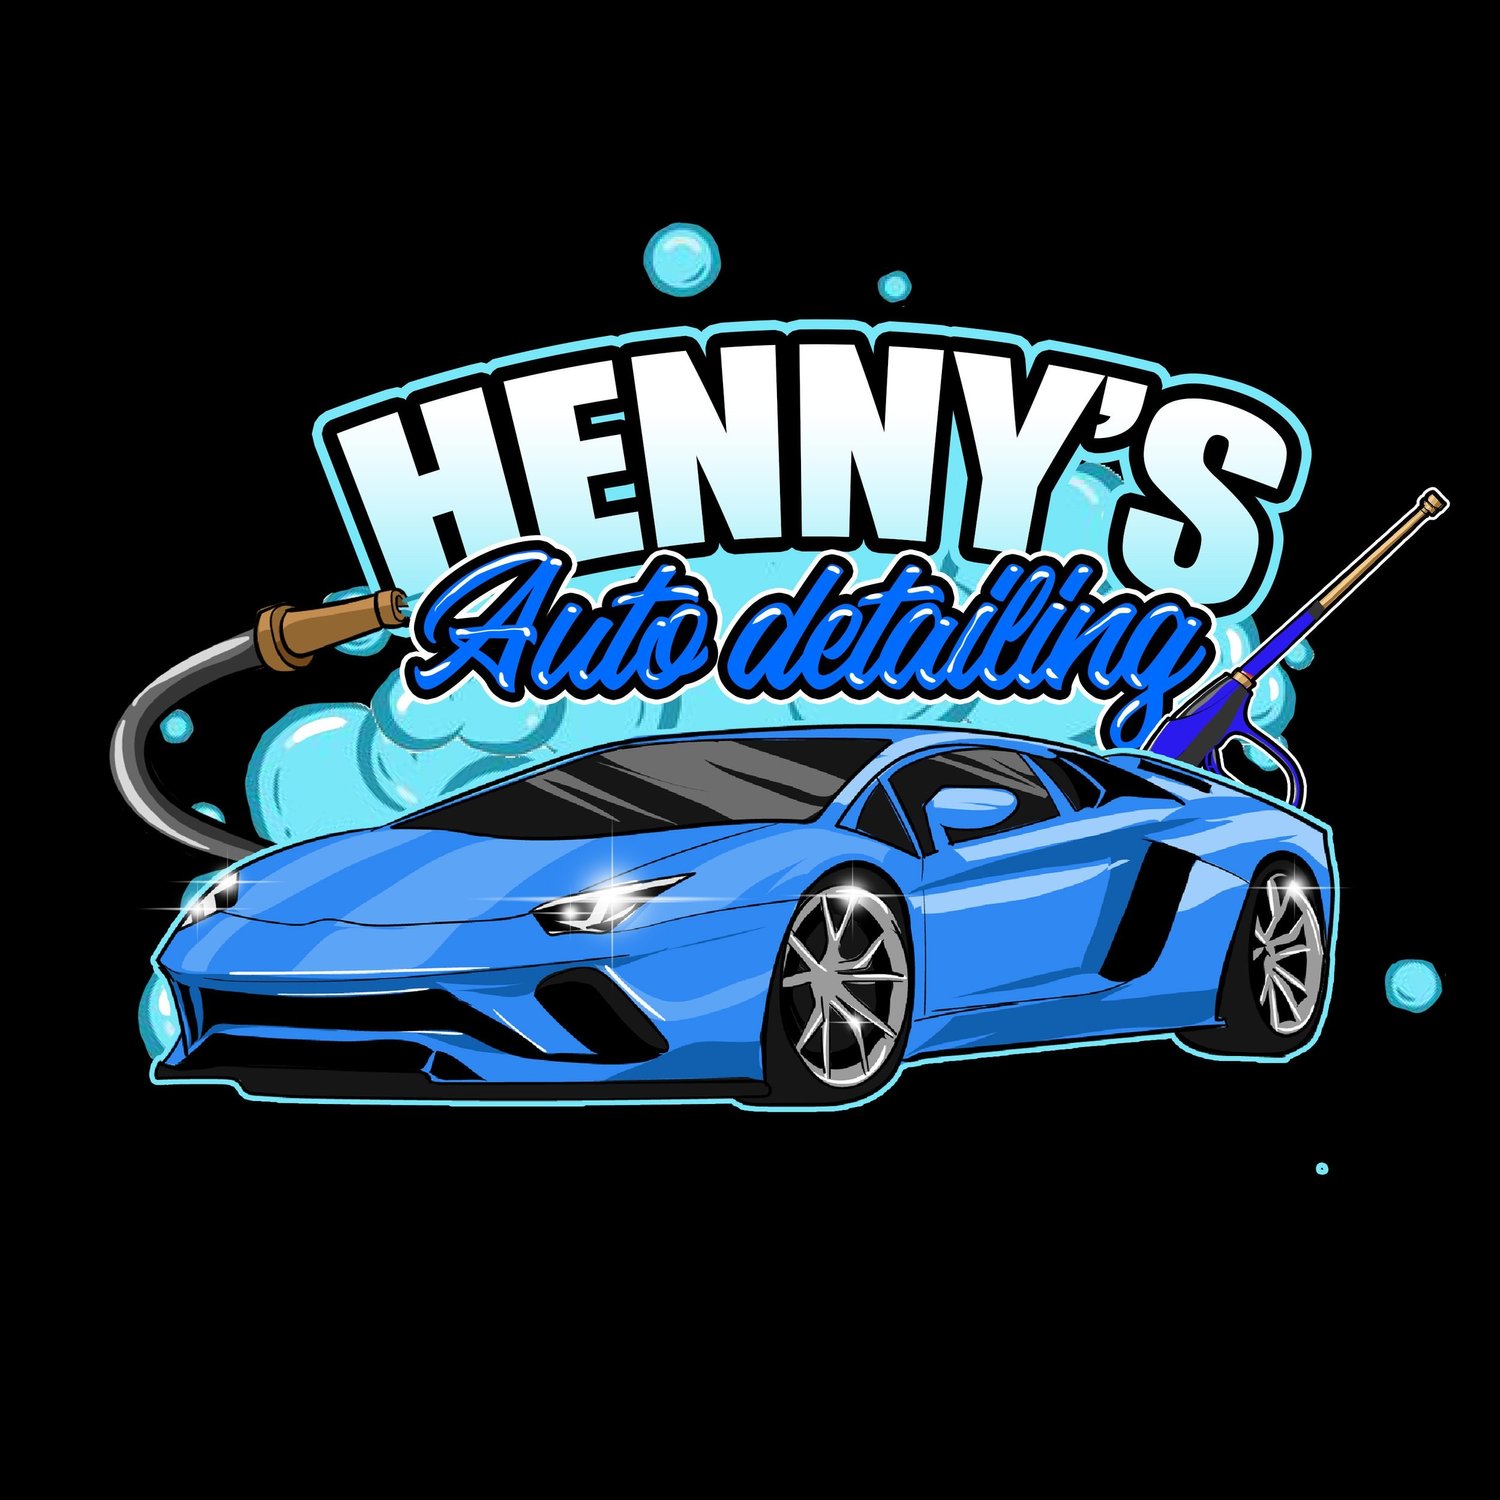 HENNYS AUTO DETAIL